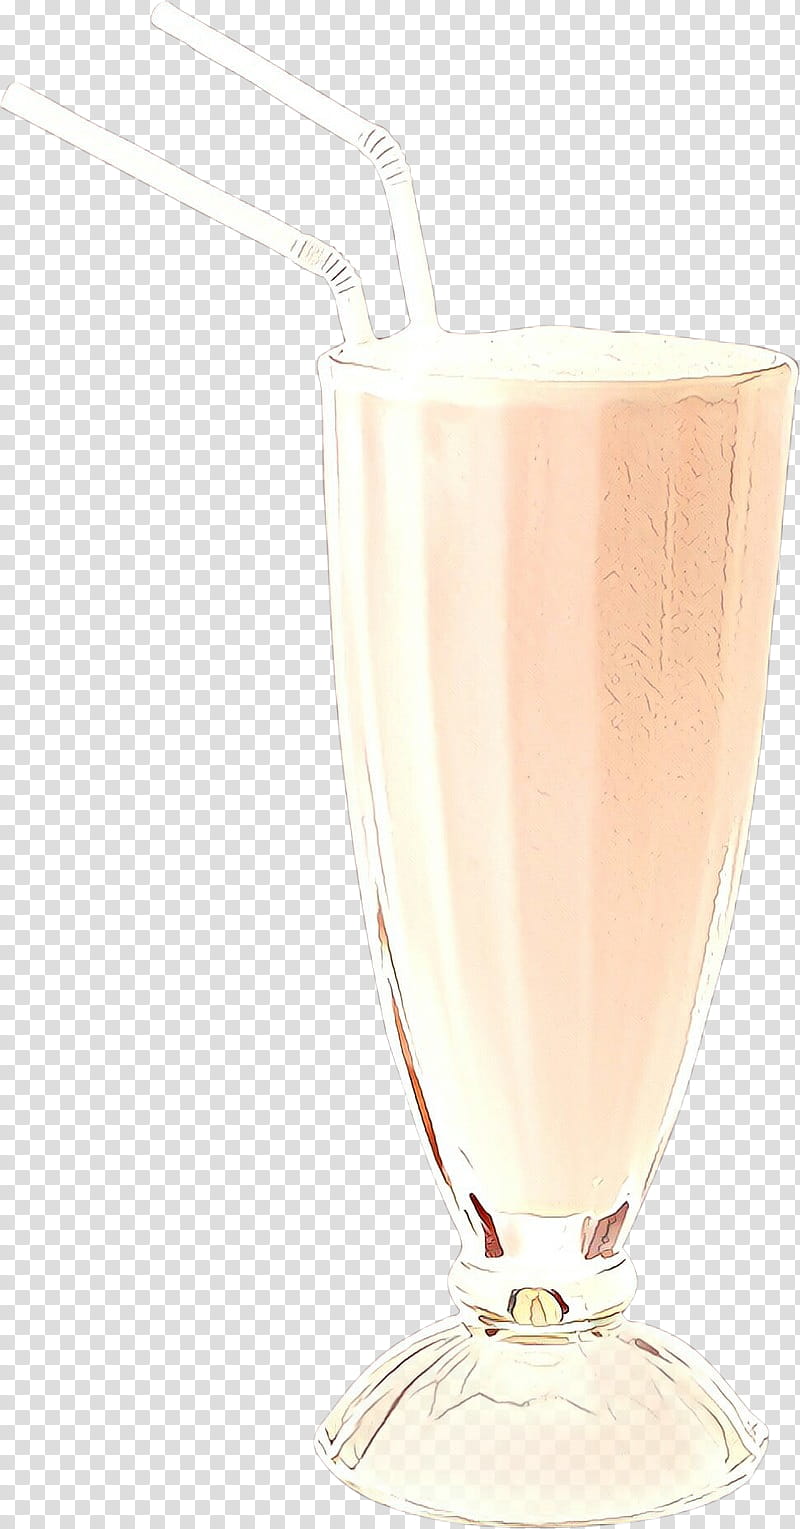 Milkshake, Drink, Champagne Cocktail, Batida, Alcoholic Beverage, Nonalcoholic Beverage, Food, Alexander transparent background PNG clipart